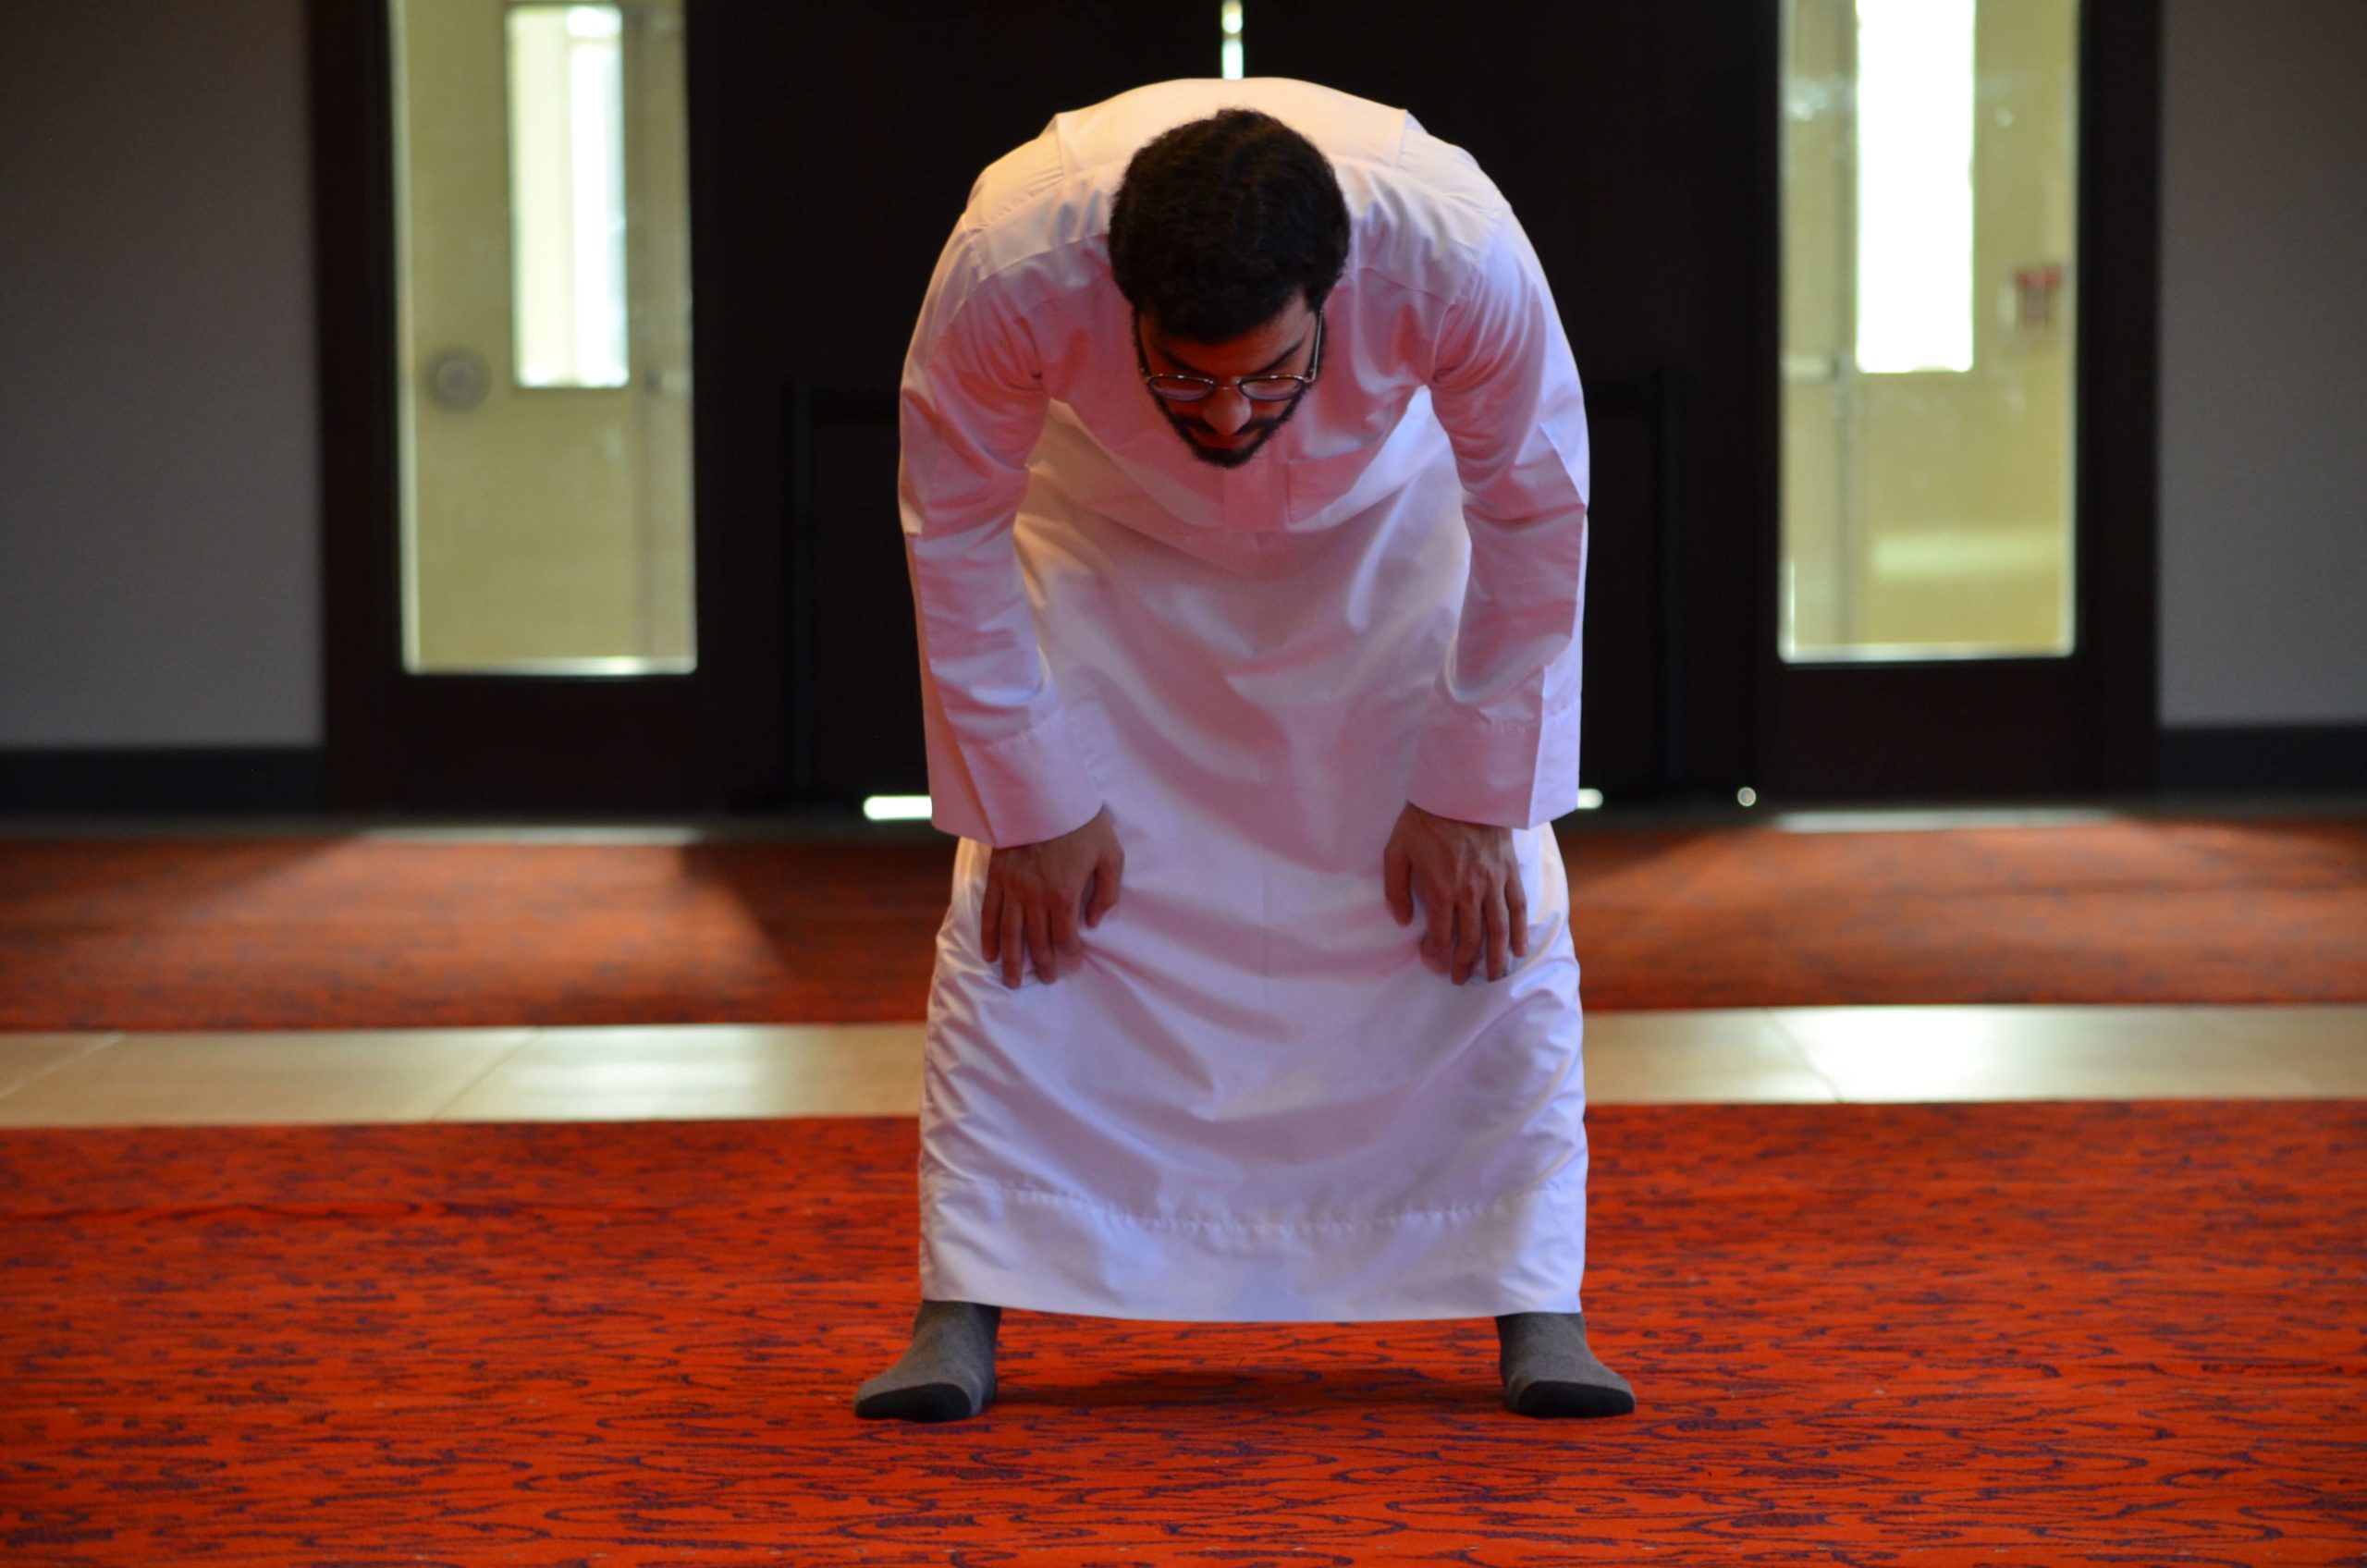 bowing - salat prayer